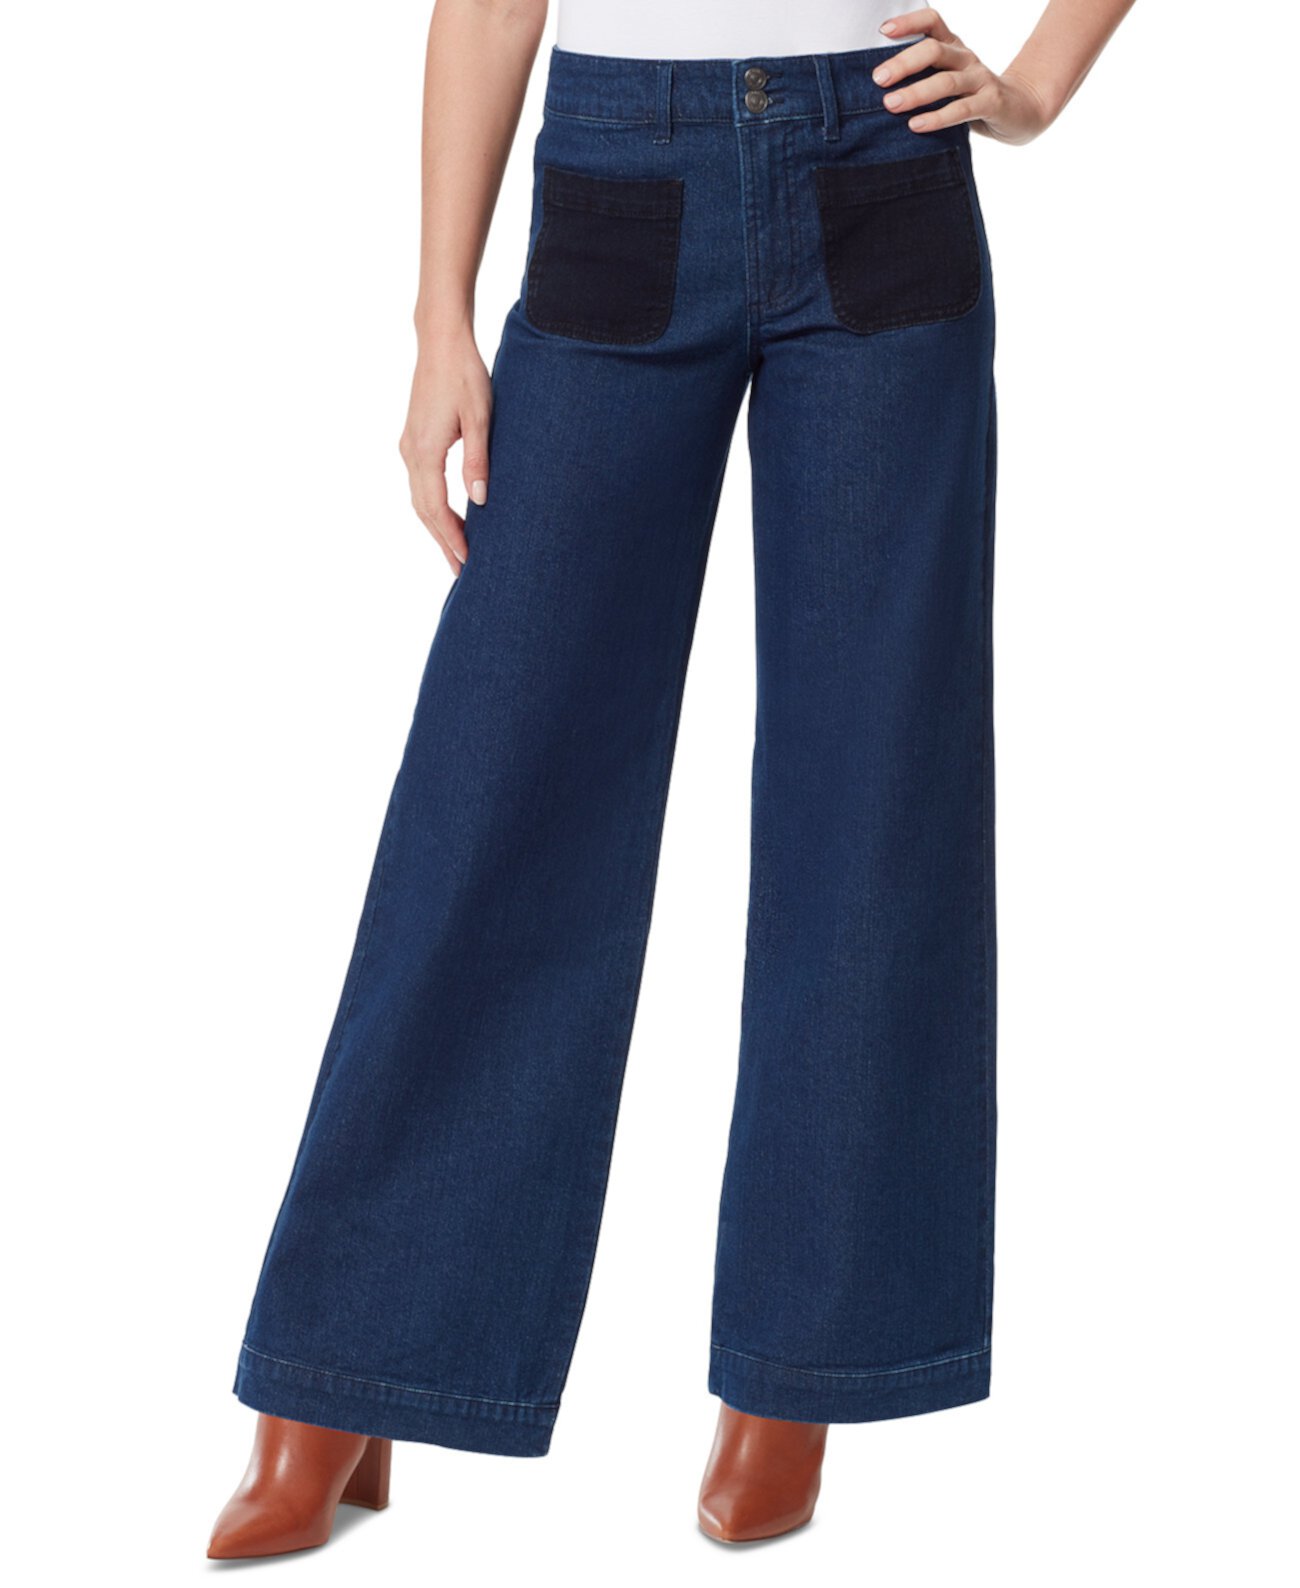 Женские широкие джинсы Christian Siriano x GV с высокой посадкой Gloria Vanderbilt